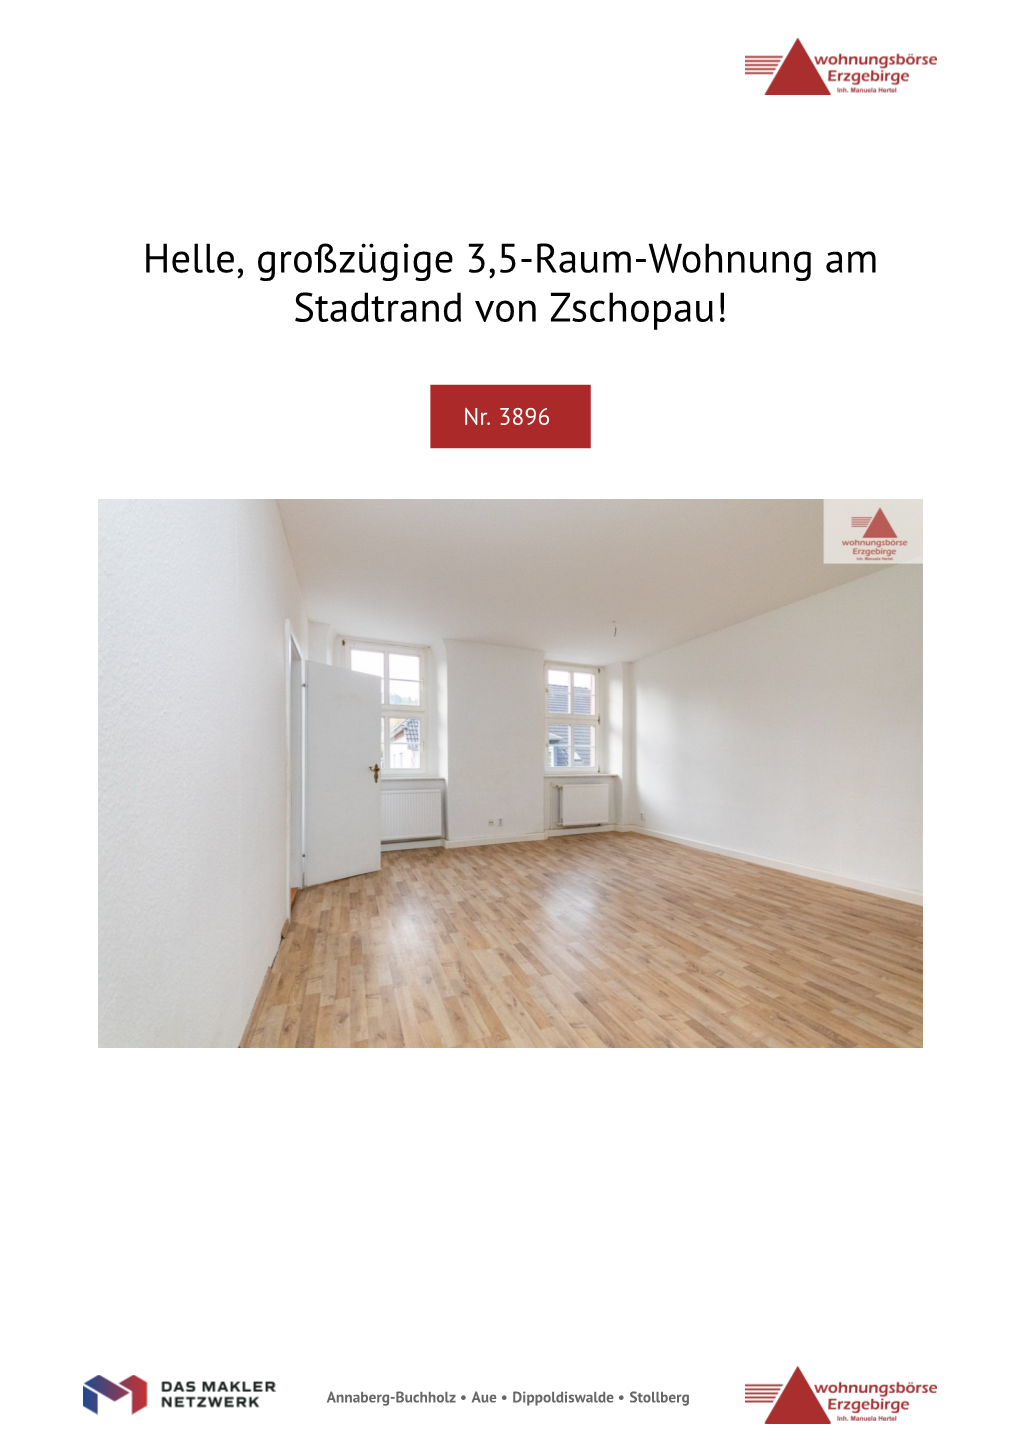 Helle, Großzügige 3,5-Raum-Wohnung Am Stadtrand Von Zschopau!